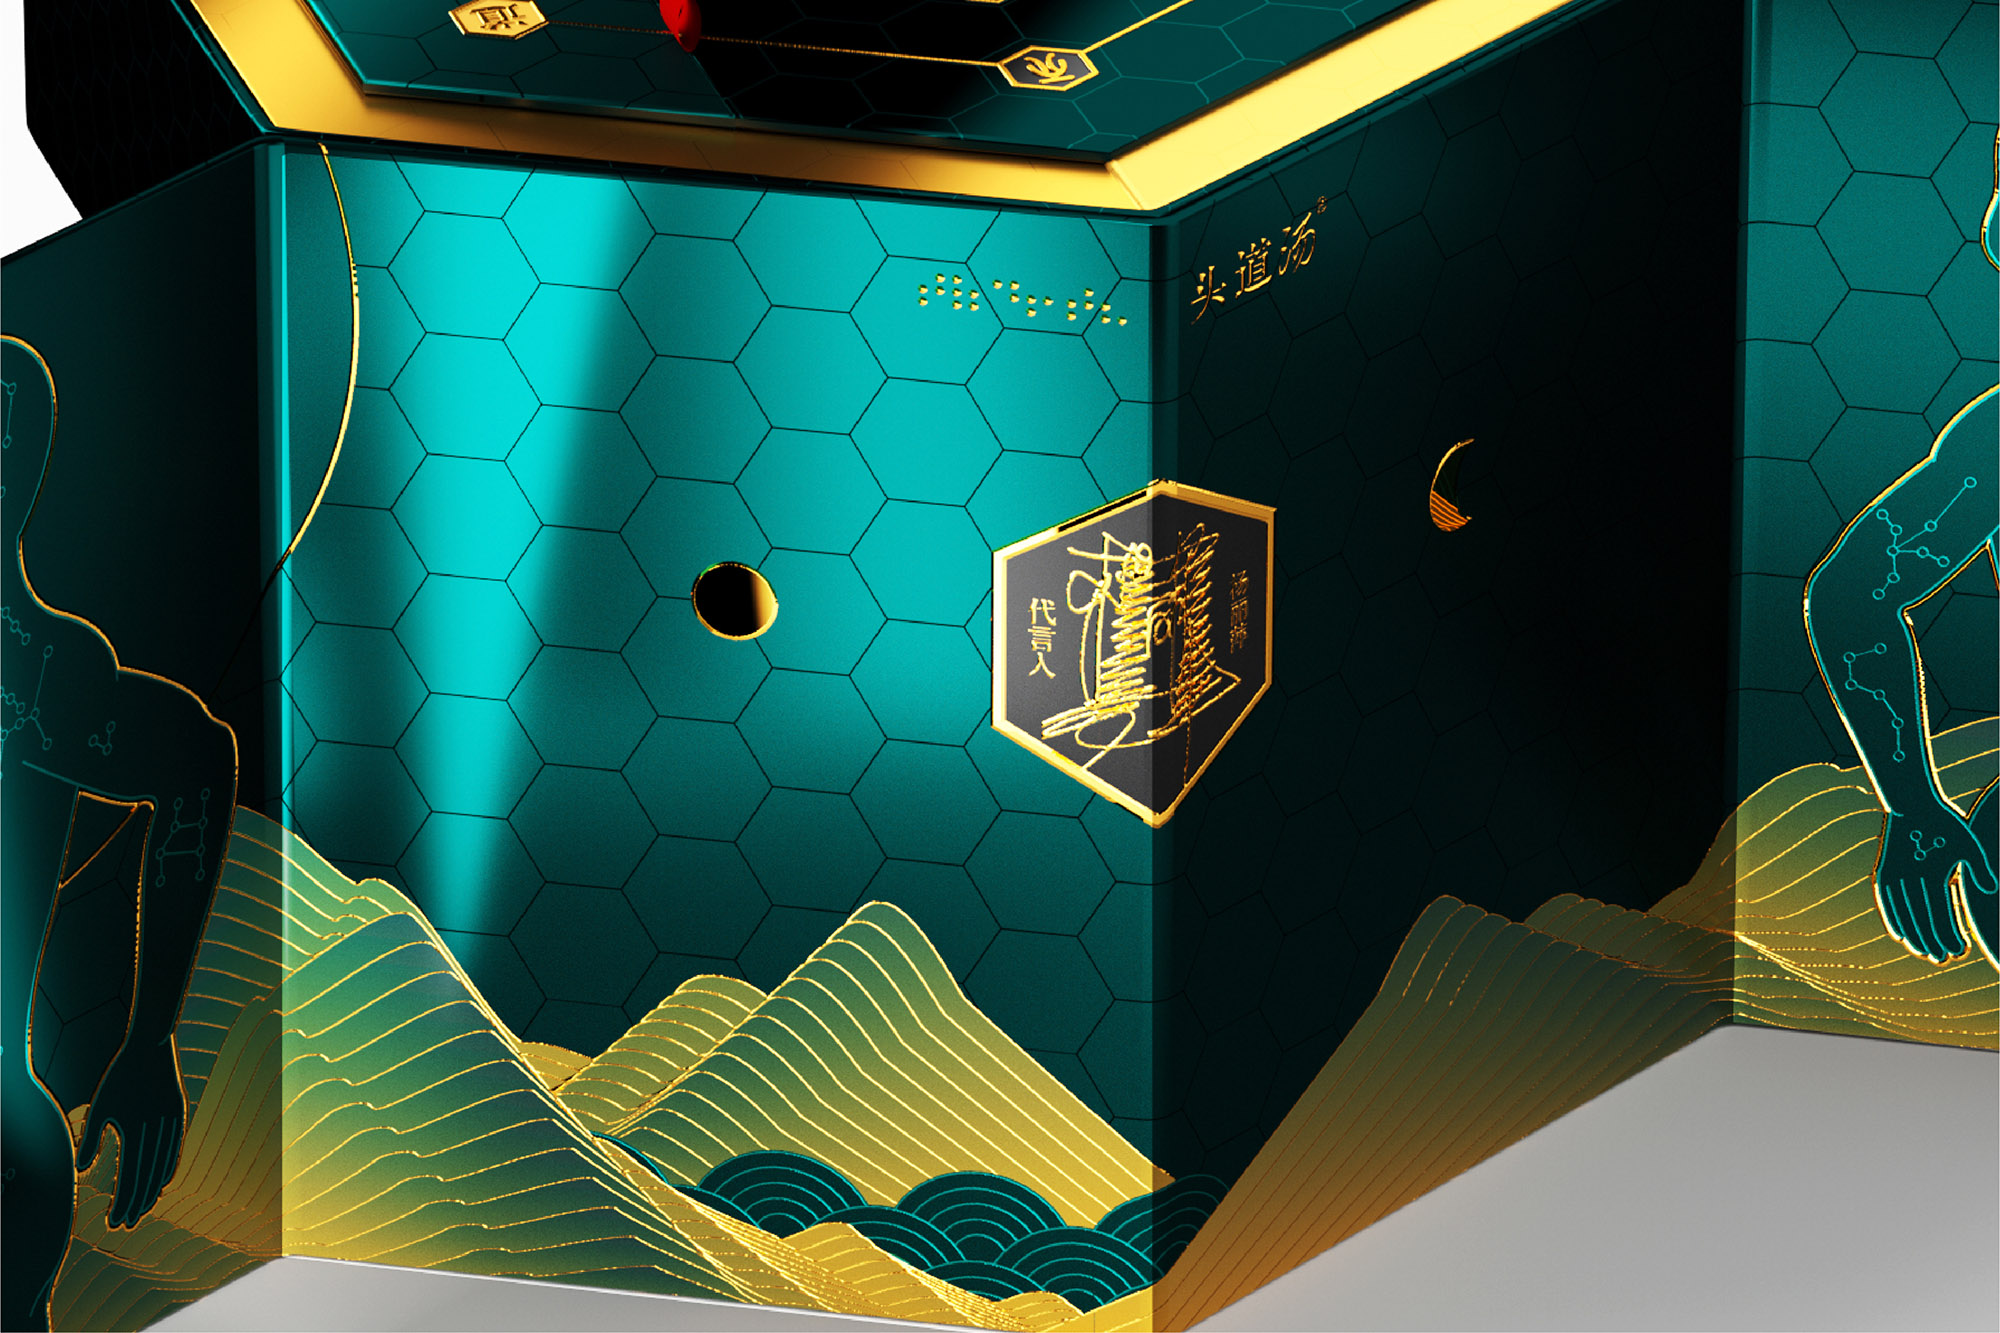 中国风 国潮高端蜂毒包装设计养生保健头道汤产品套盒